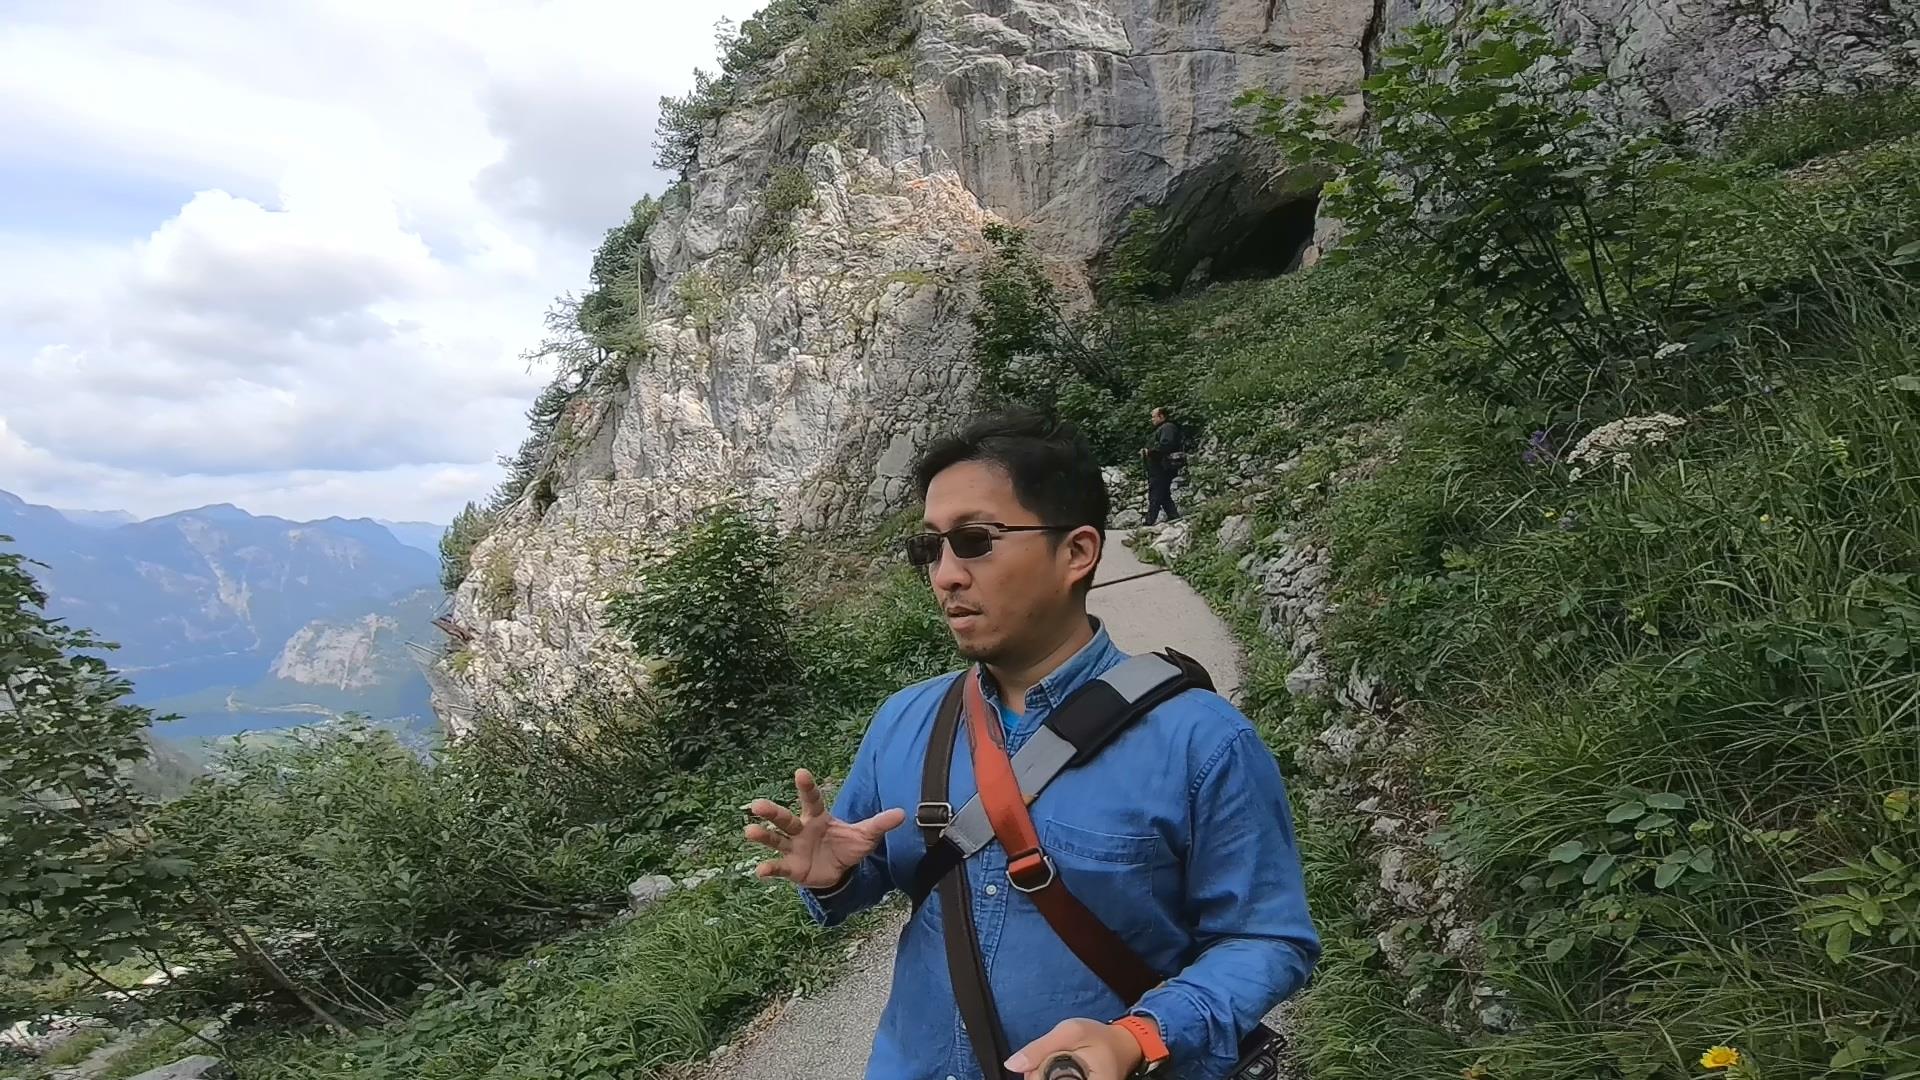 [2019 中歐攝影旅行] Day08 – 哈斯塔特 Hallstatt、達克斯坦冰洞、猛瑪洞、聖沃夫崗遊湖